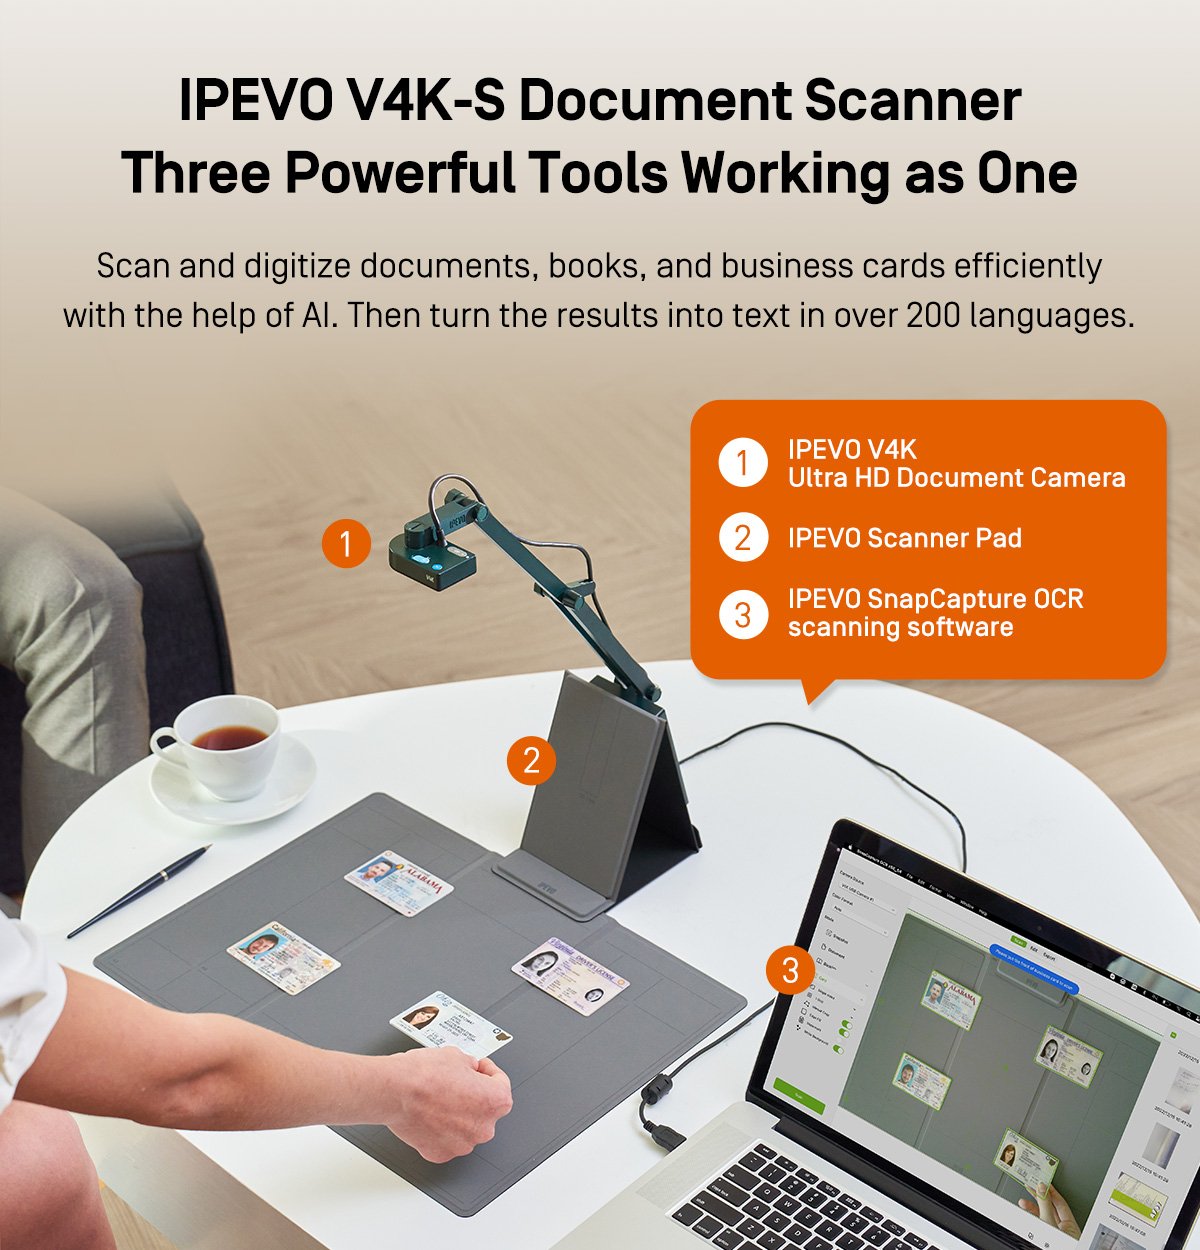 IPEVO V4K-S Document Scanner